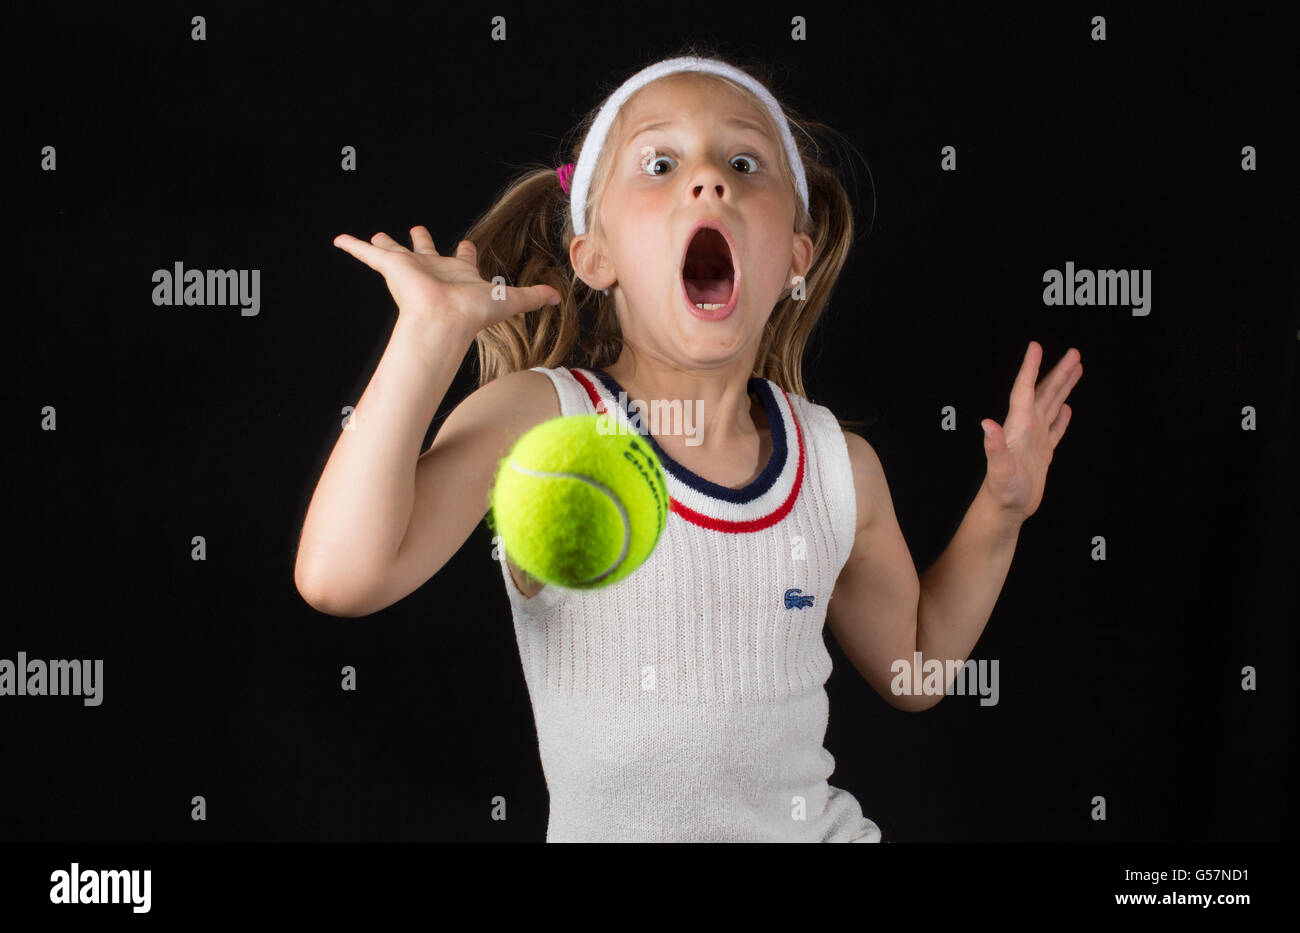 Portrait humoristique d'une jeune fille jouant au tennis Banque D'Images